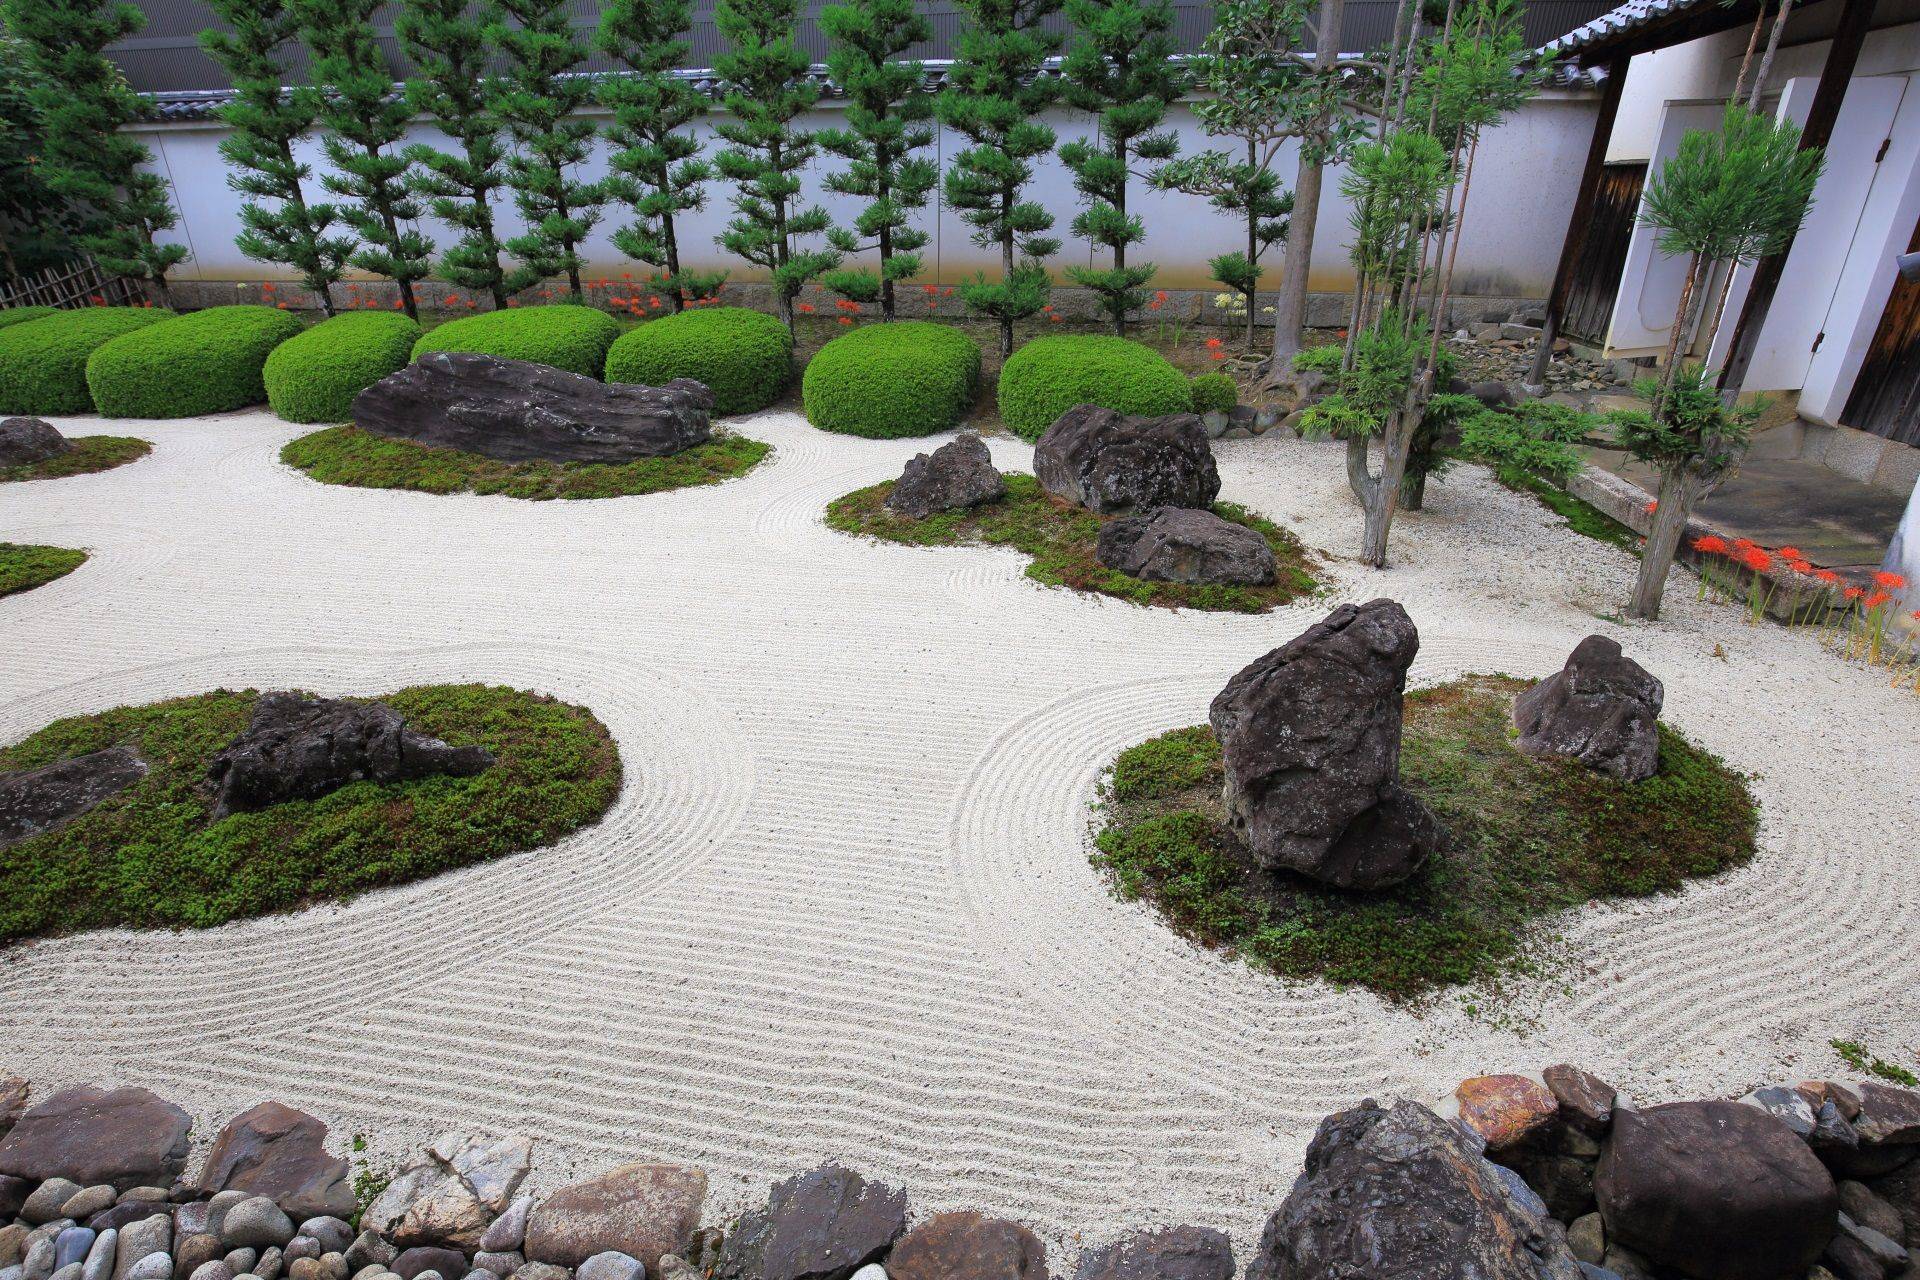 Сад в японском стиле в европейском саду